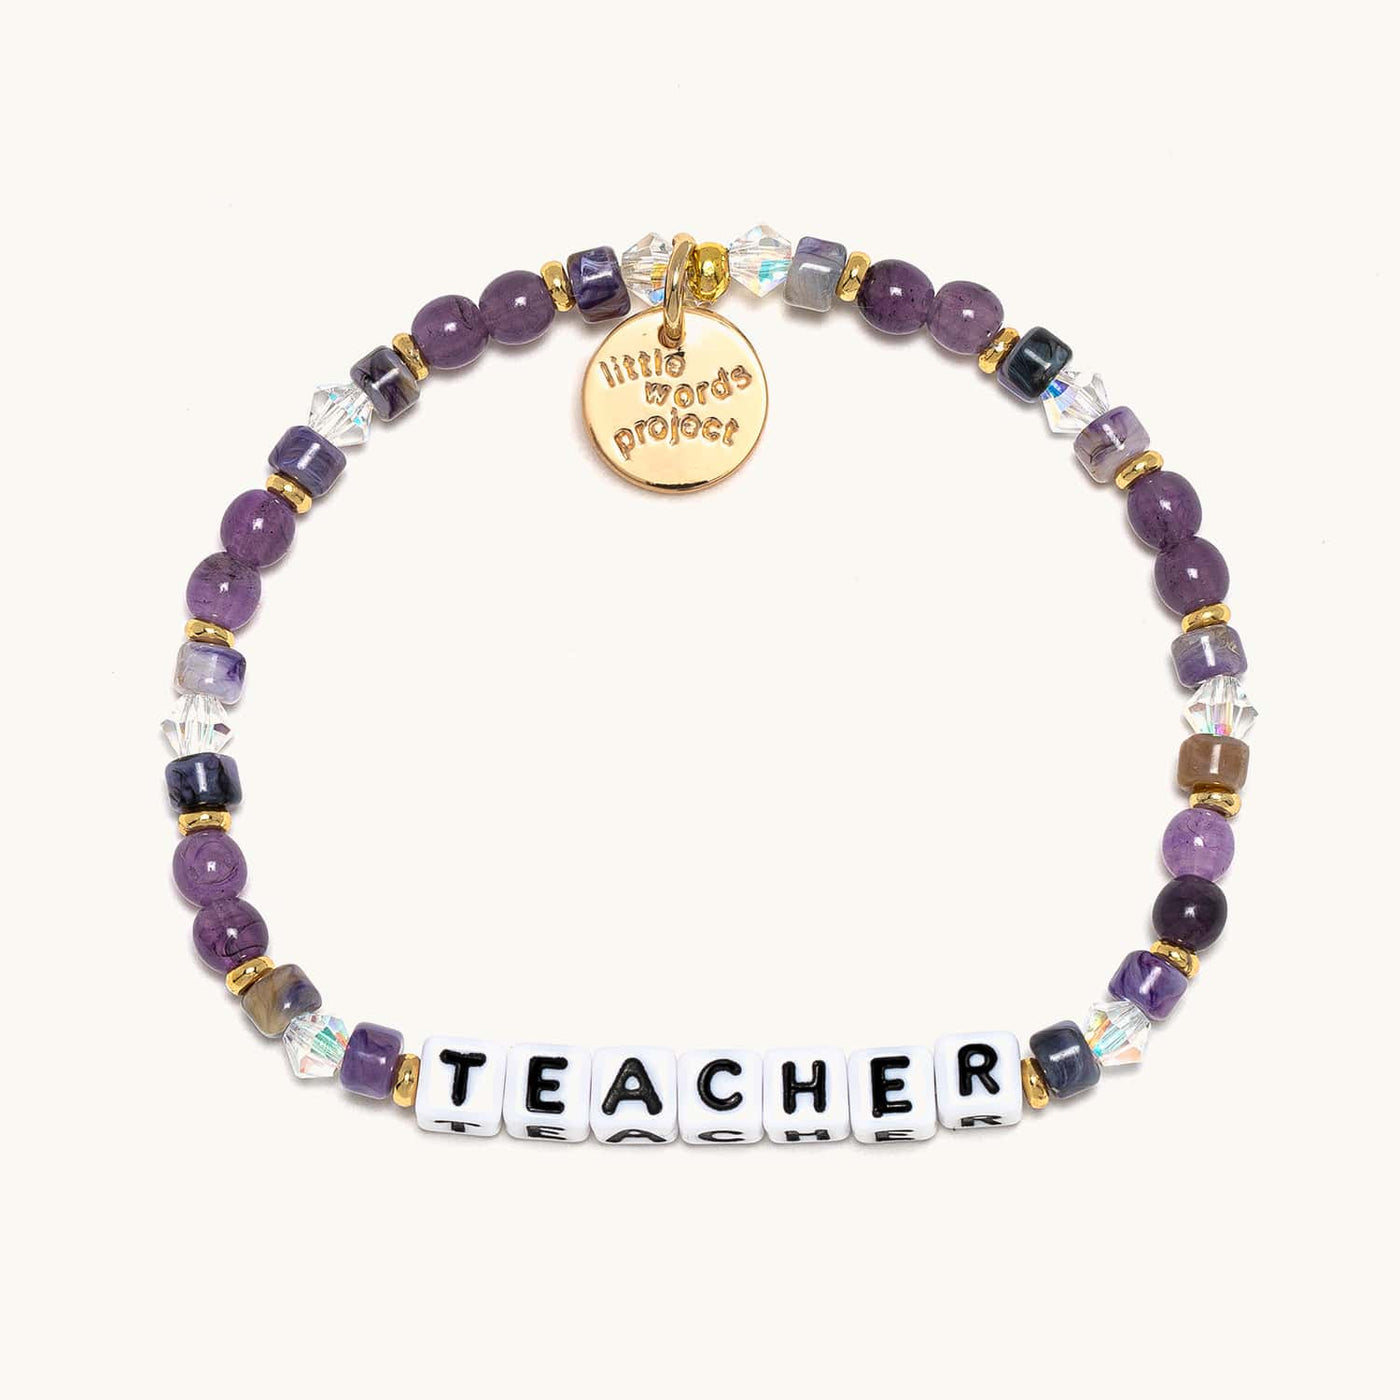 Teacher Purple Bracelet - Everyday Heroes - Little Words Project